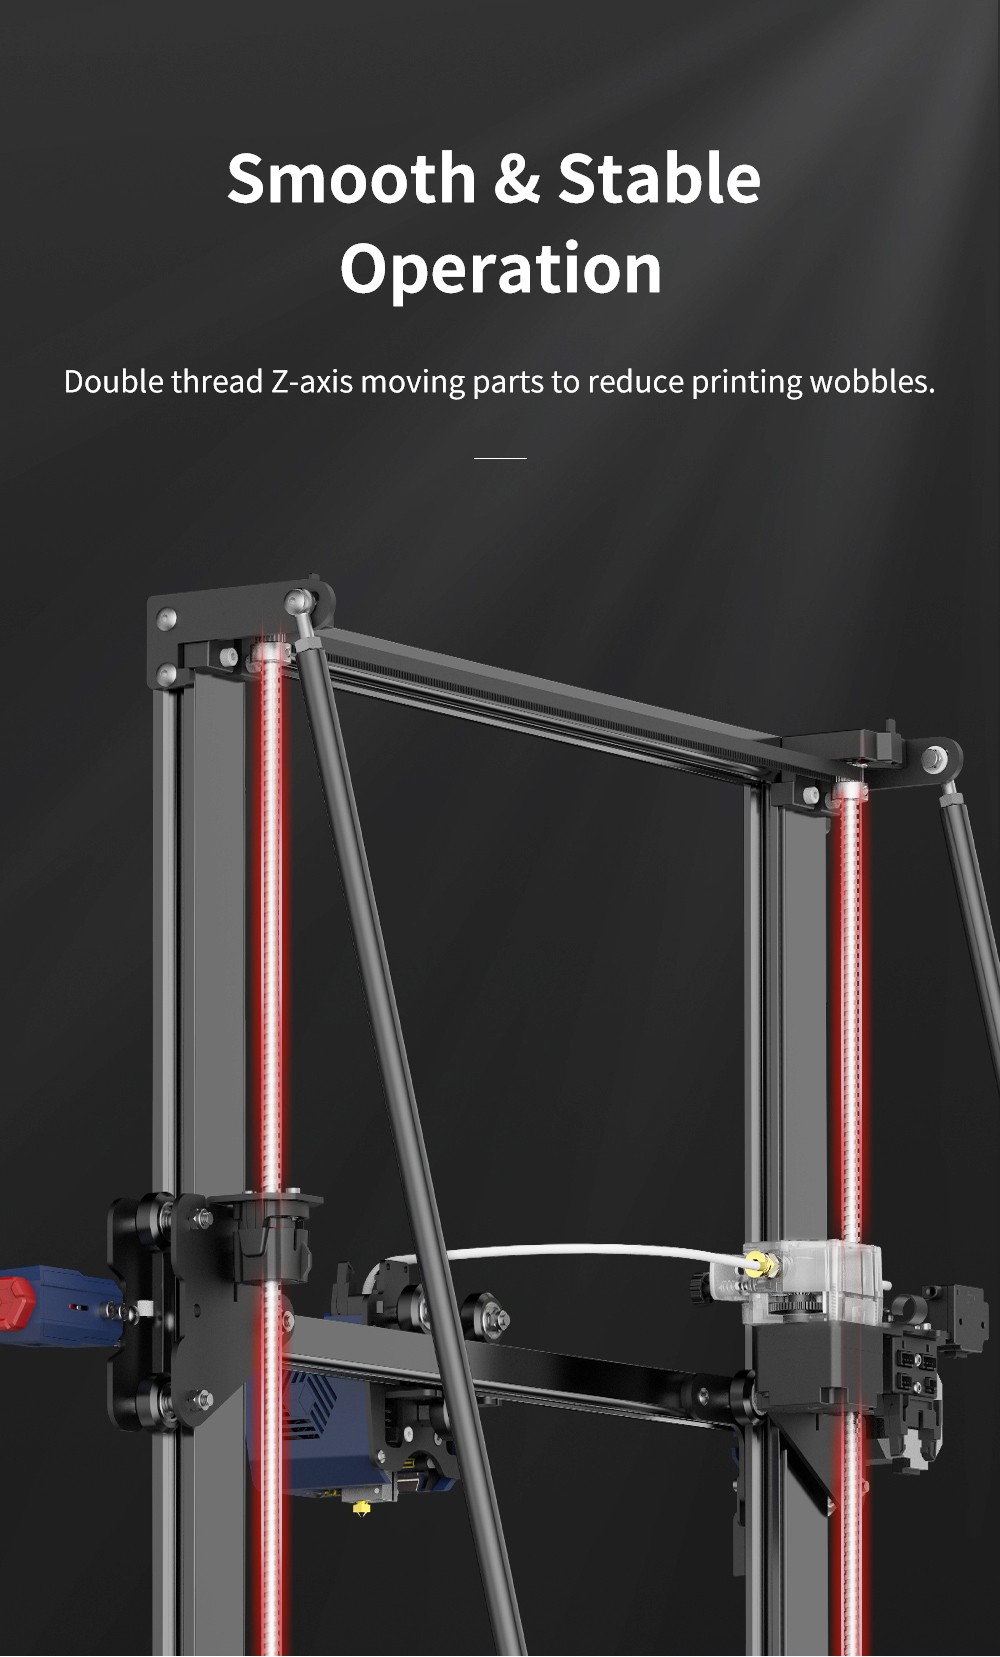 Anycubic Kobra Max 3D Drukarka, automatyczne poziomowanie, sterowniki krokowe, wyświetlacz 4.3 cala, rozmiar wydruku 450 x 400 x 400 mm